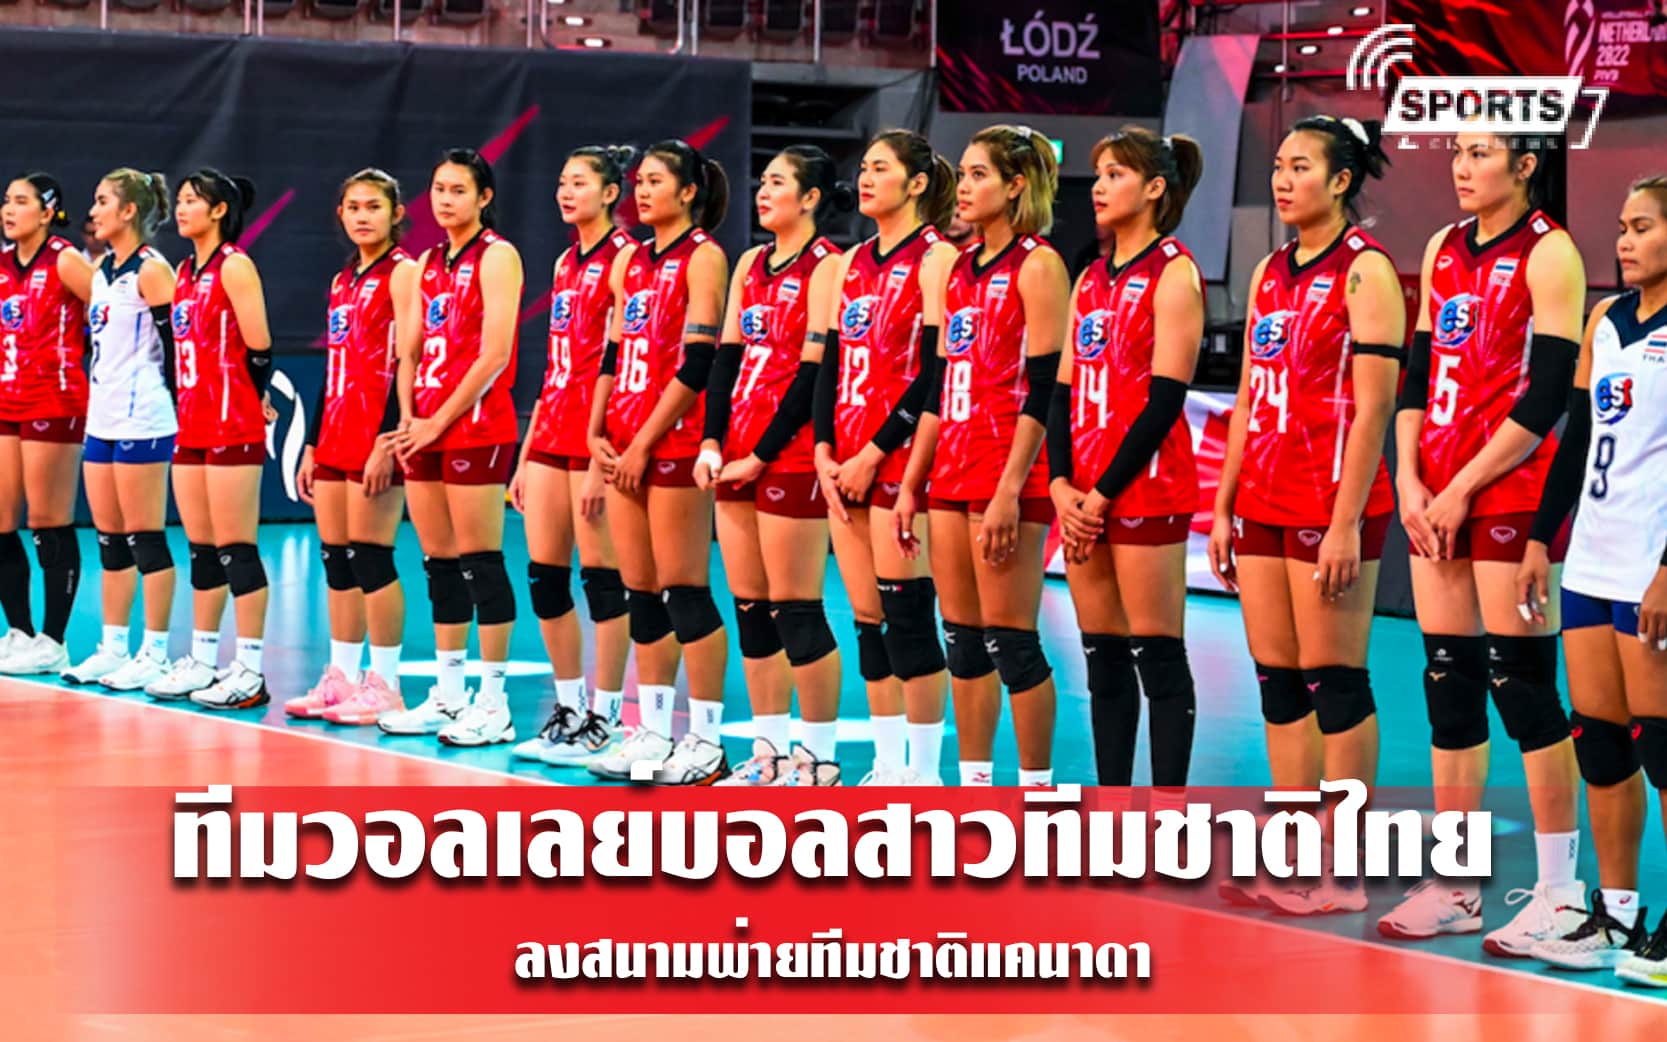 ทีมวอลเลย์บอลสาวทีมชาติไทย ลงสนามพ่ายทีมชาติแคนาดา